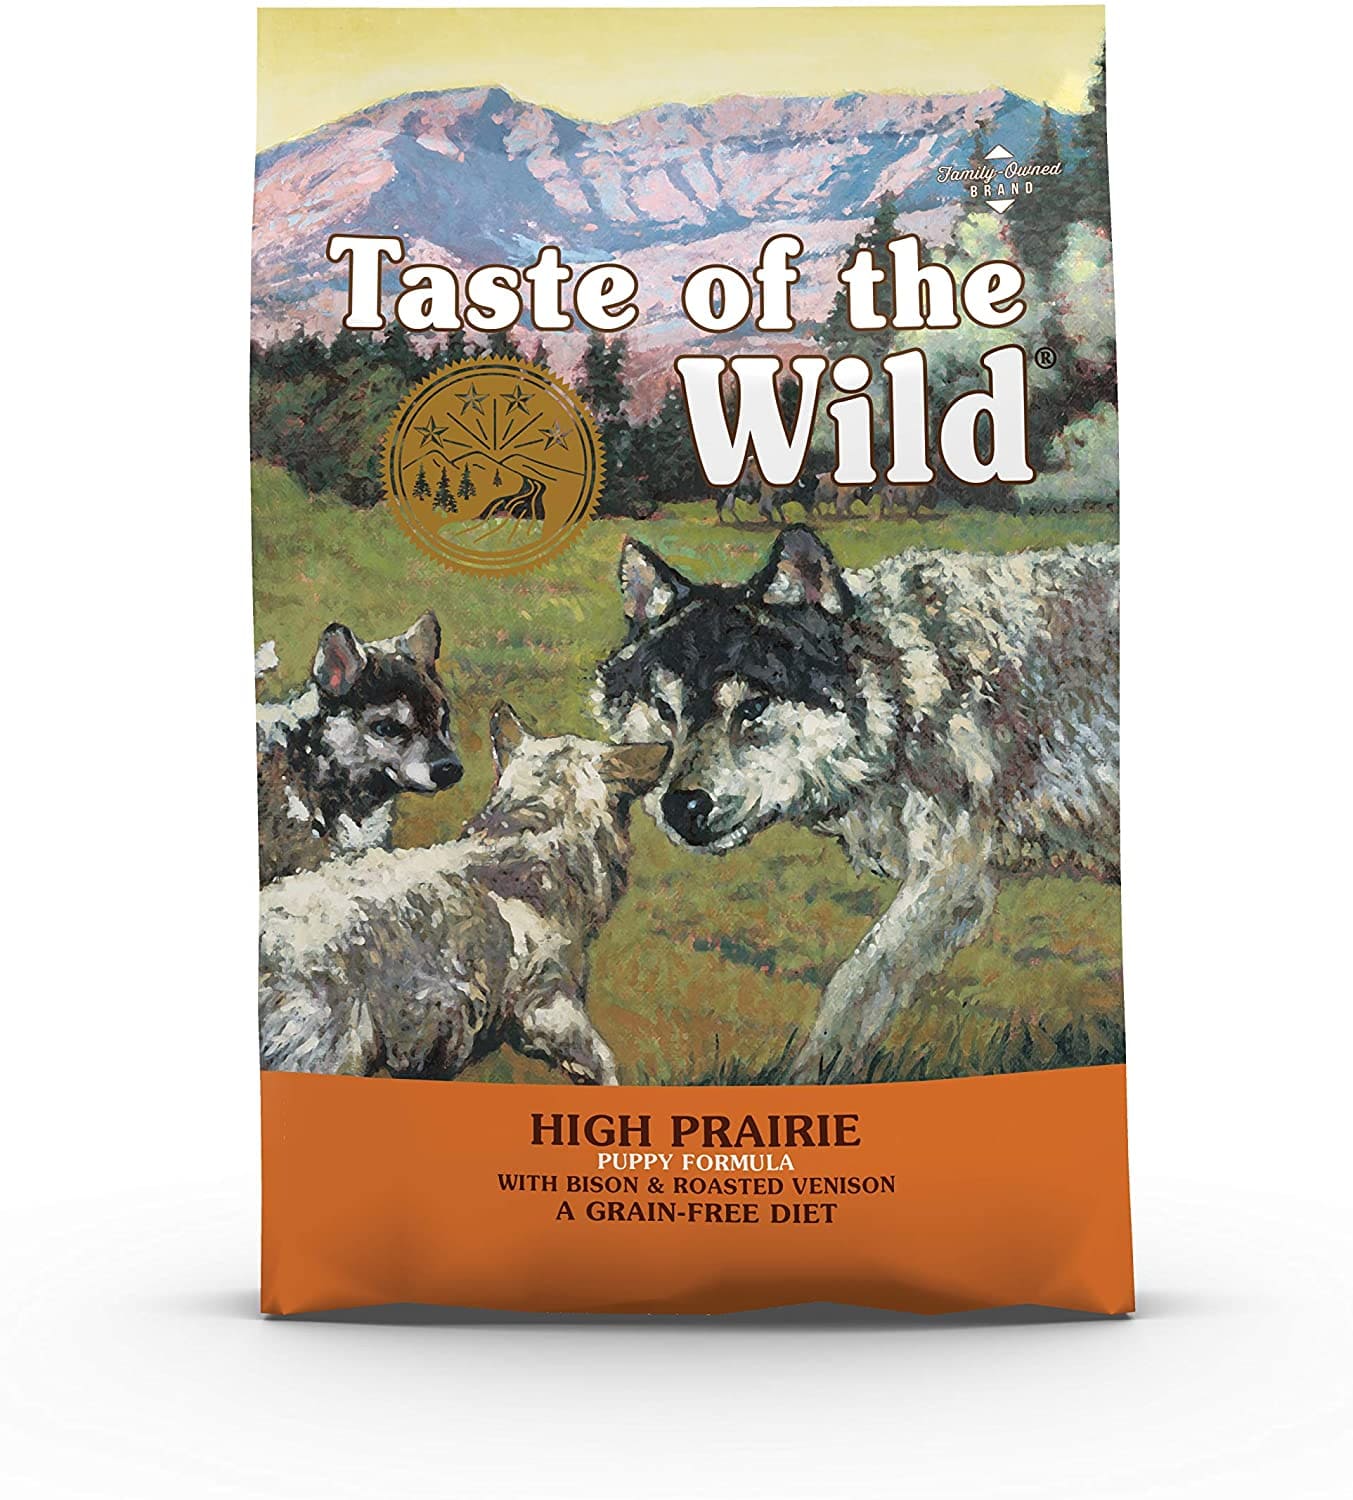 Pienso Taste Of The Wild pienso para cachorros con Bisonte y Venado asados